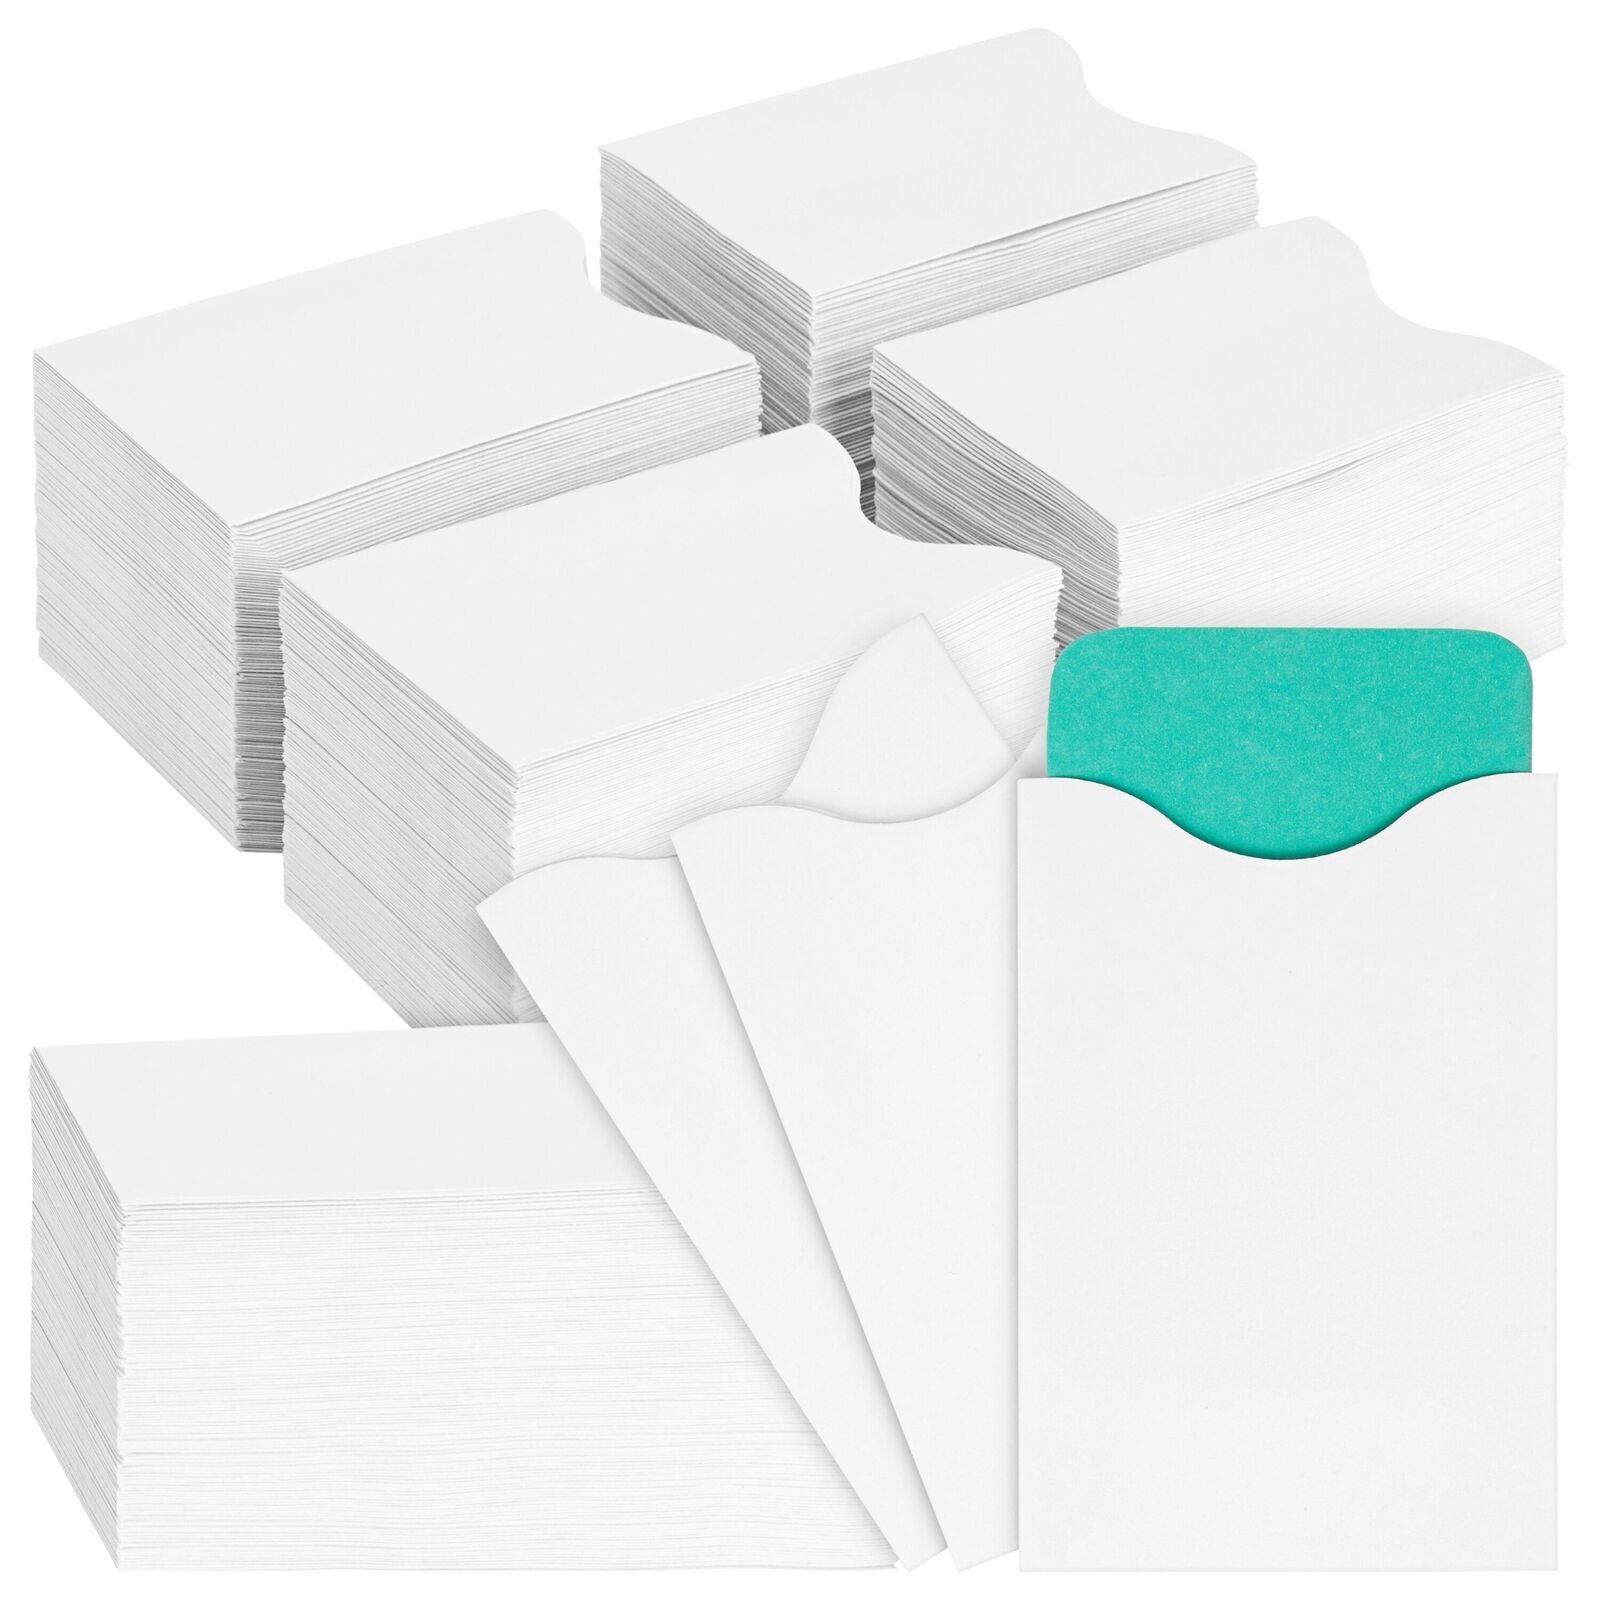 500 Pack Blank Keycard Envelope Sleeves, Card Protectors (White, 3.5 x 2.3 In)